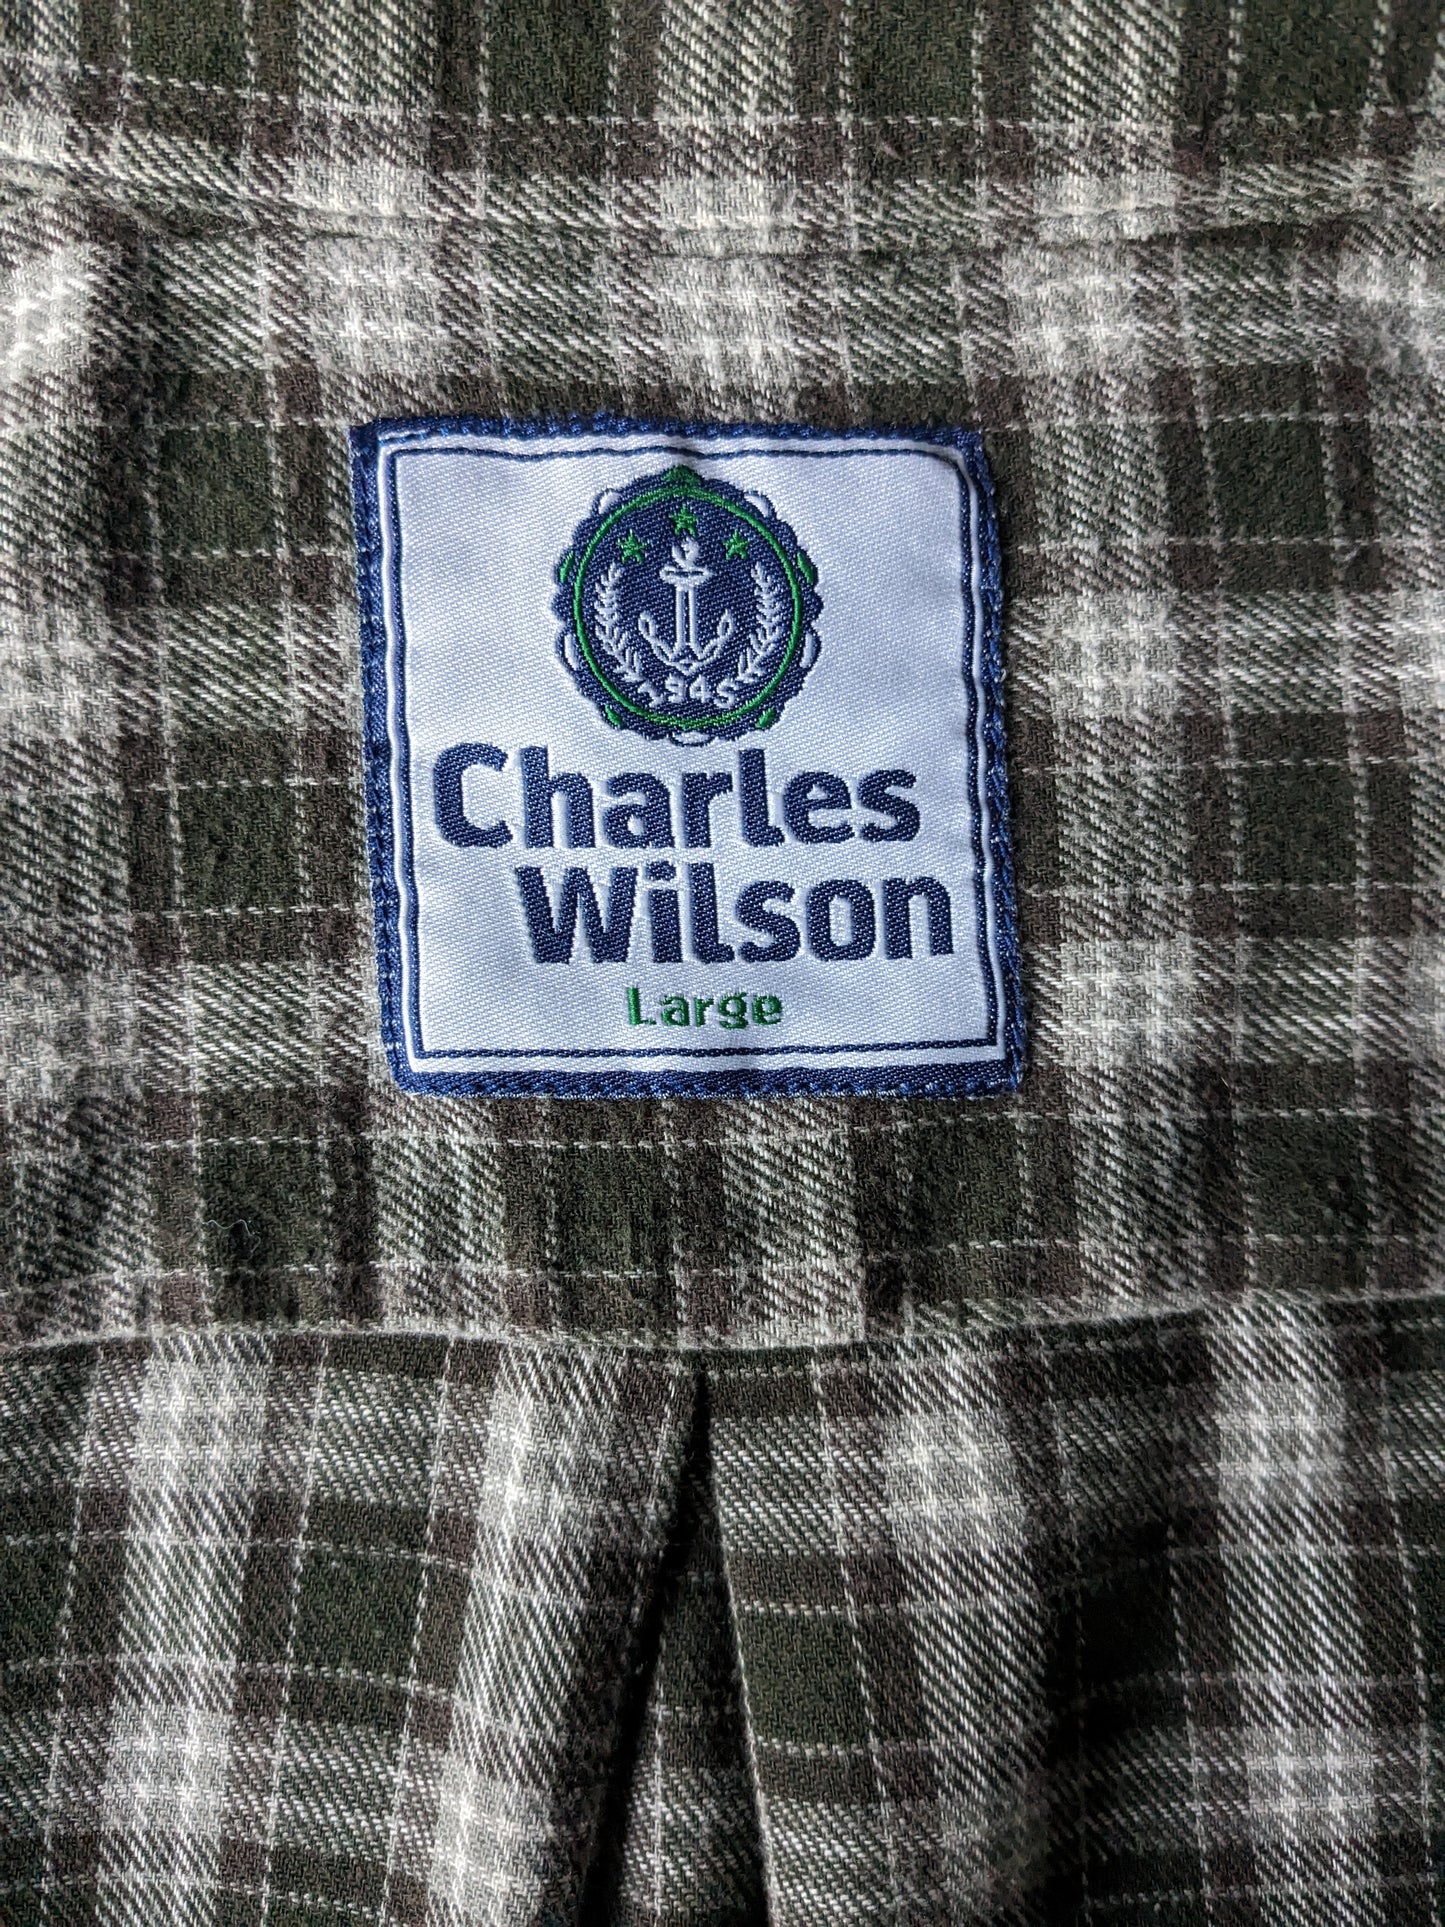 Charles Wilson flanellen overhemd. Groen bruin geruit. Maat L.